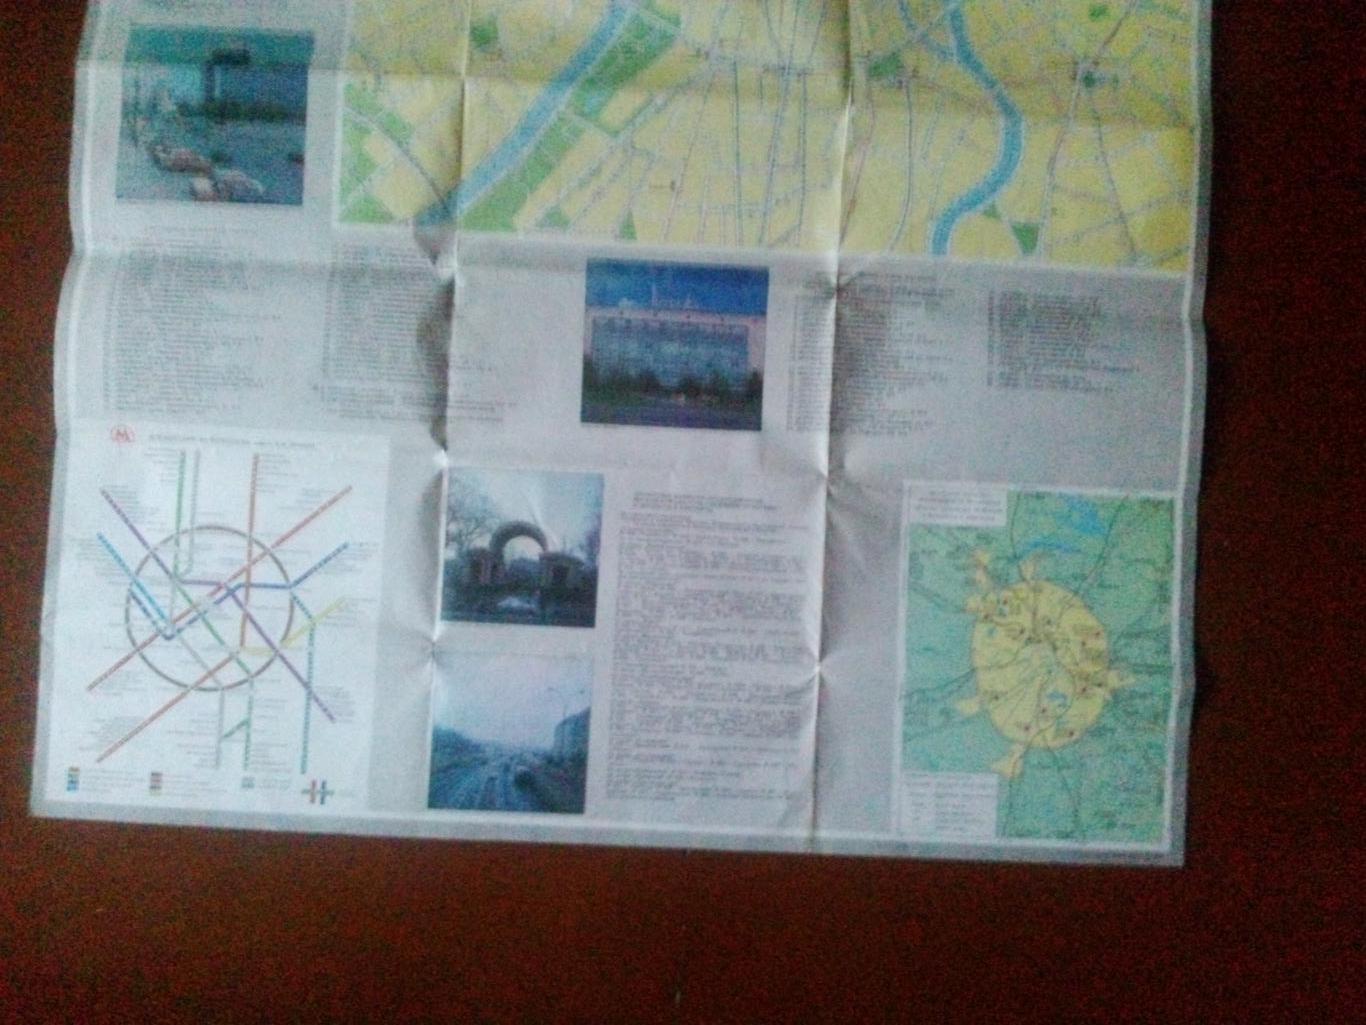 Карта (туристская схема) : Москва 1989 г. Карта движения пассажирского транспорт 6